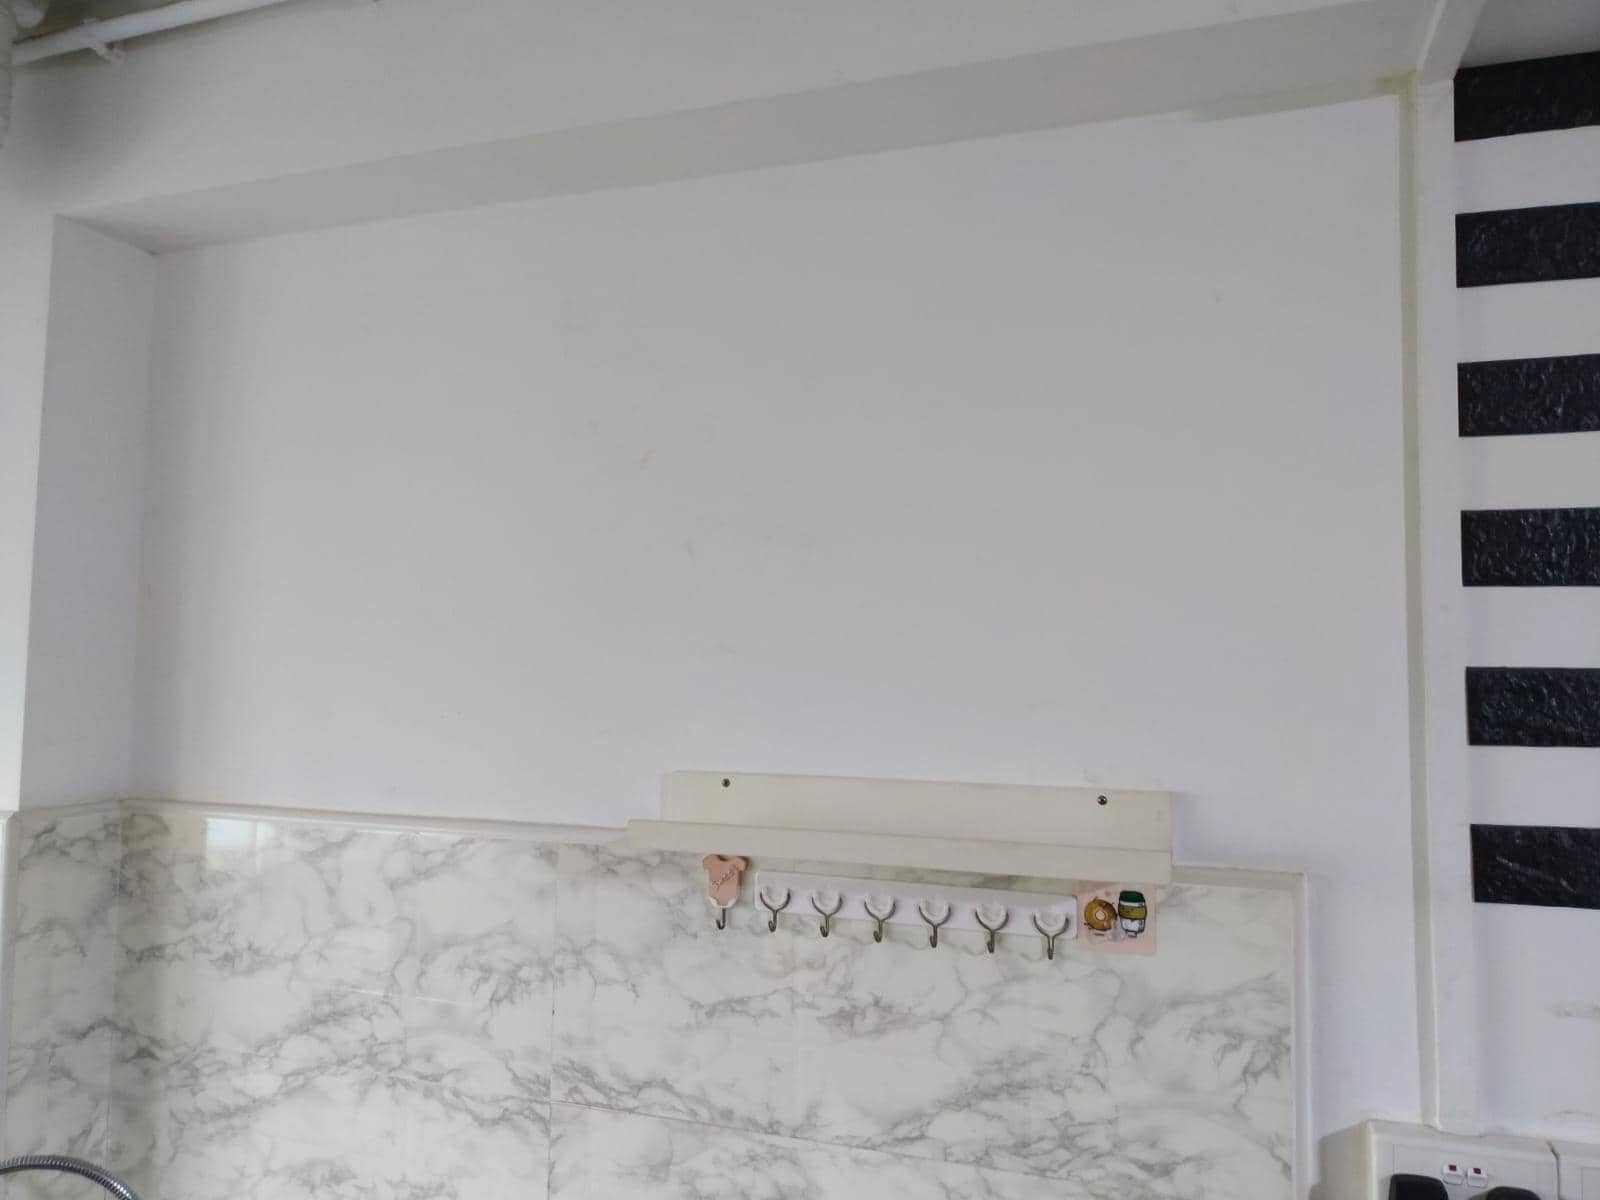 mount kitchen cabinet